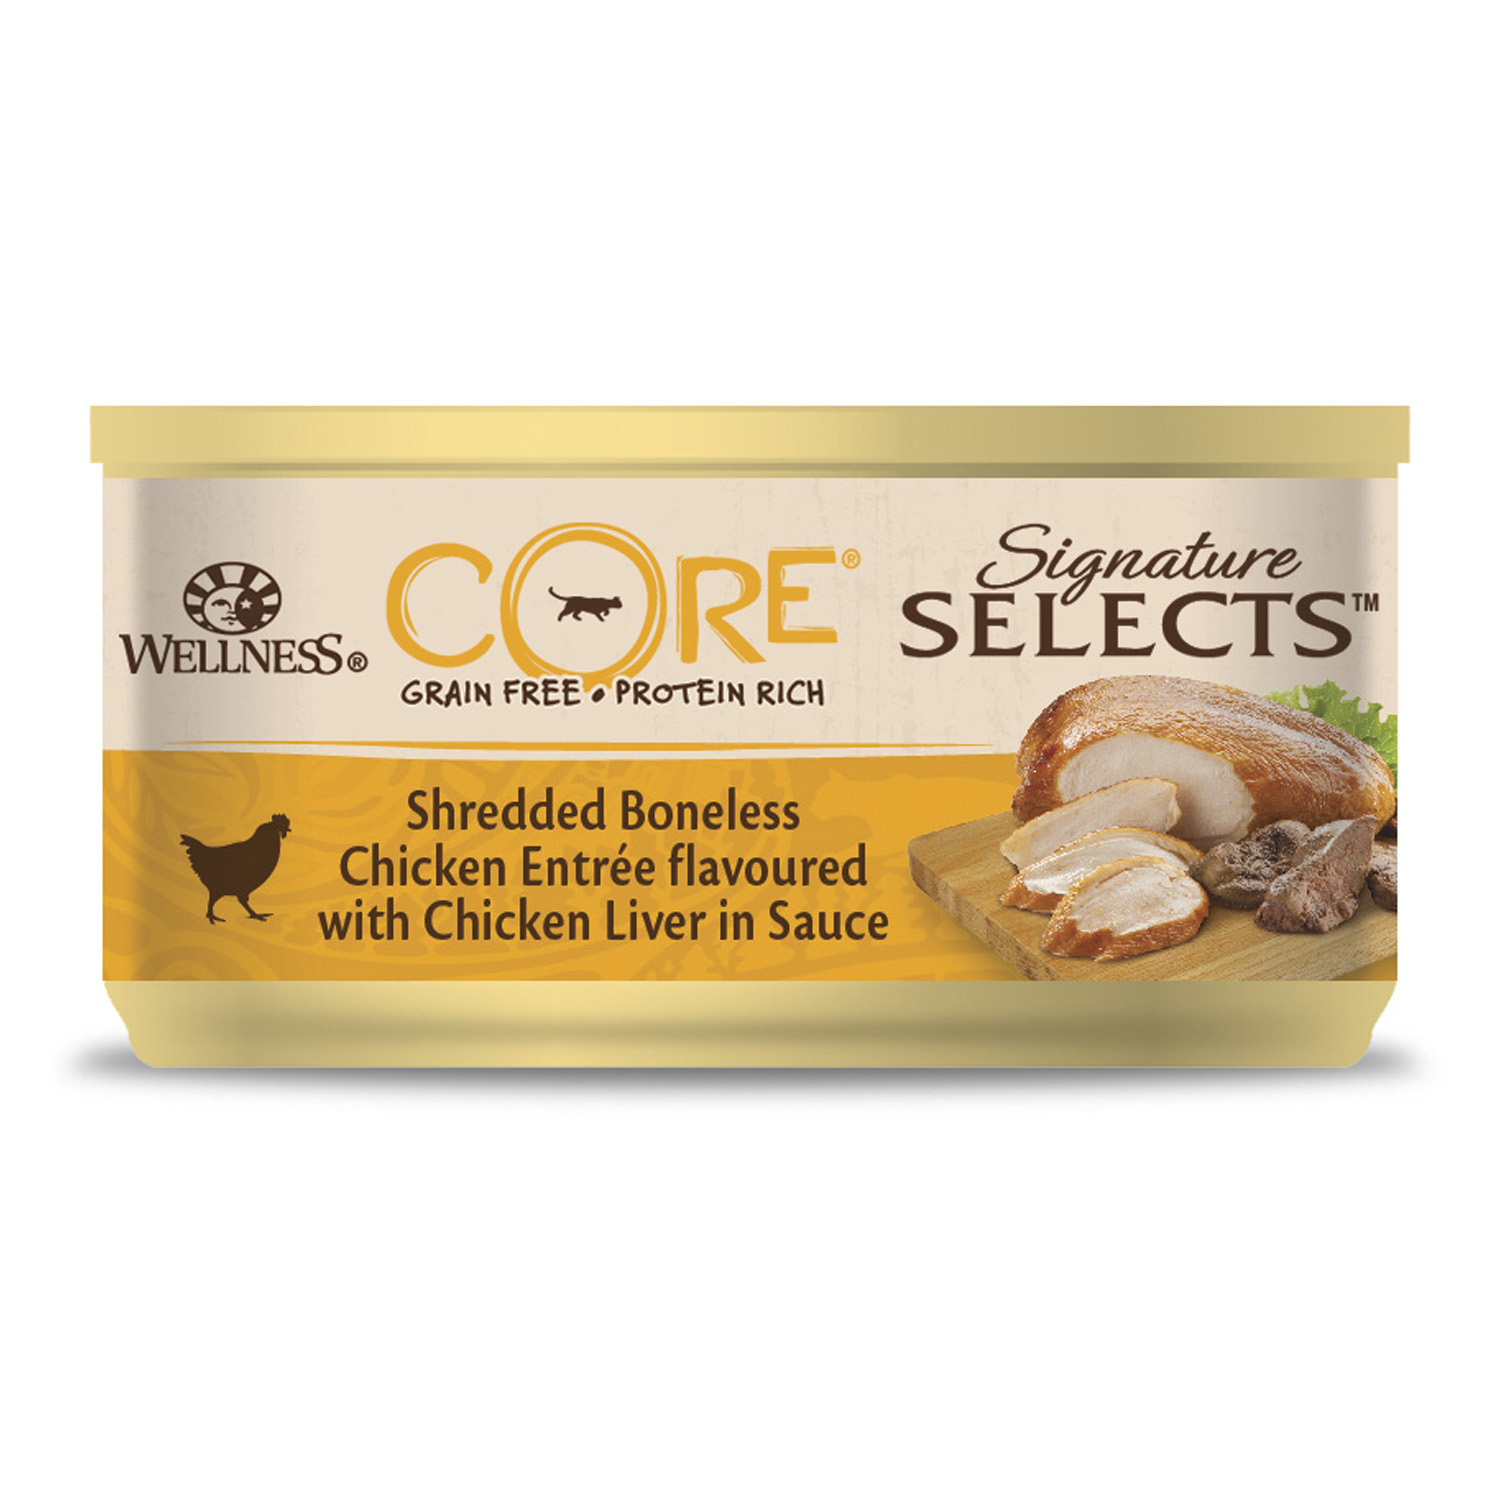 Wellness CORE signature Selects консервы из курицы с куриной печенью в виде фарша в соусе для кошек (79 г)